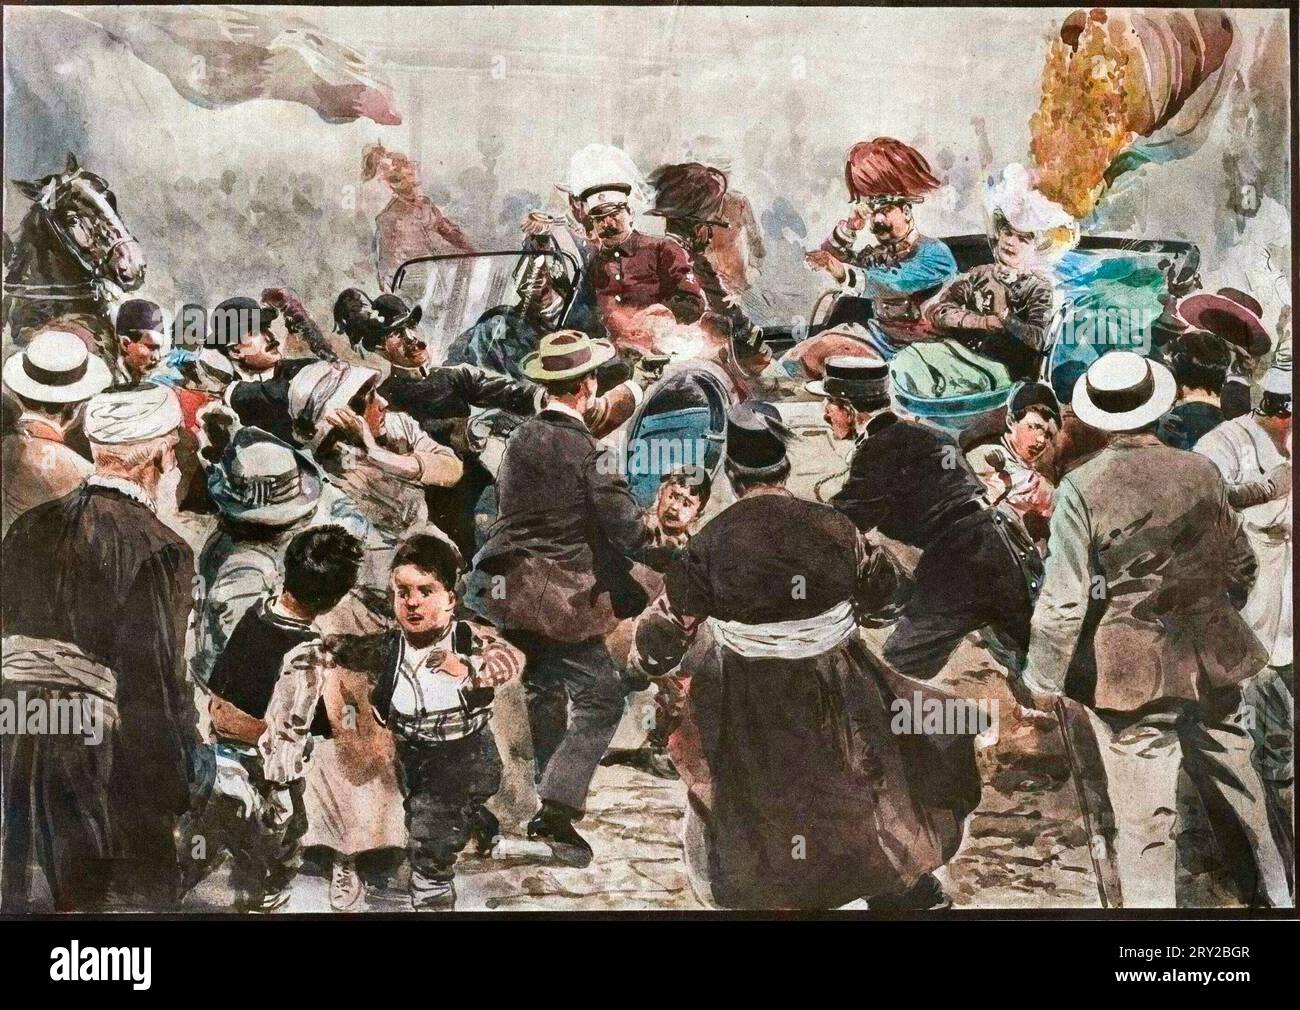 Assassinio dell'arciduca Francesco Ferdinando - assassinio di Francesco Ferdinando, 1863-1914 arciduca d'Austria, e di sua moglie Sofia, a Sarajevo, Bosnia, 28 giugno 1914 - Foto Stock